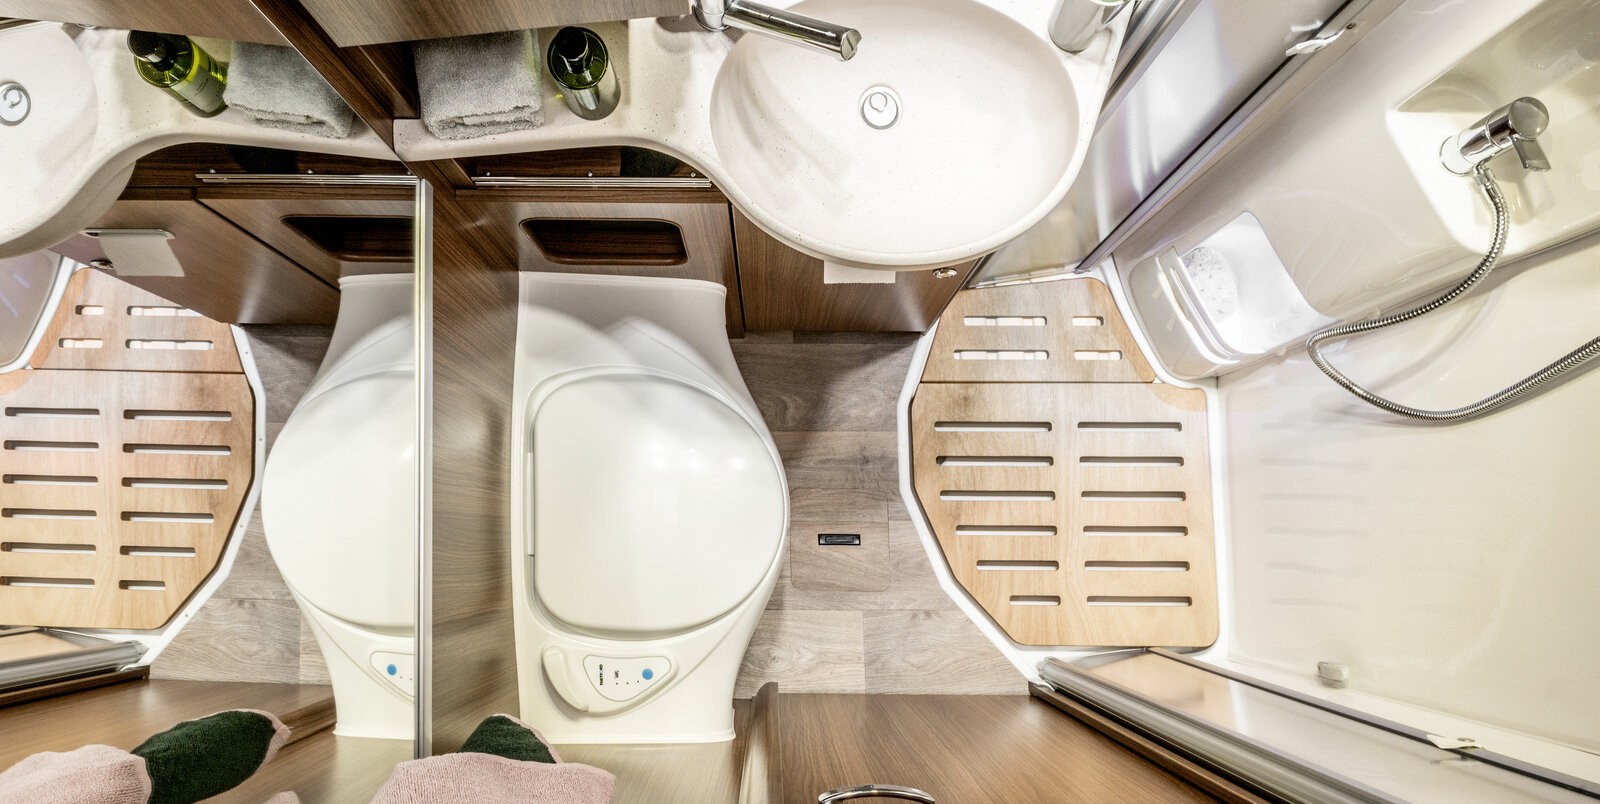 Comfortbadkamer in de HYMER ML-T van bovenaf gezien: douchecabine met houten lattenbodem, wastafel, spiegel, toilet, opbergkasten